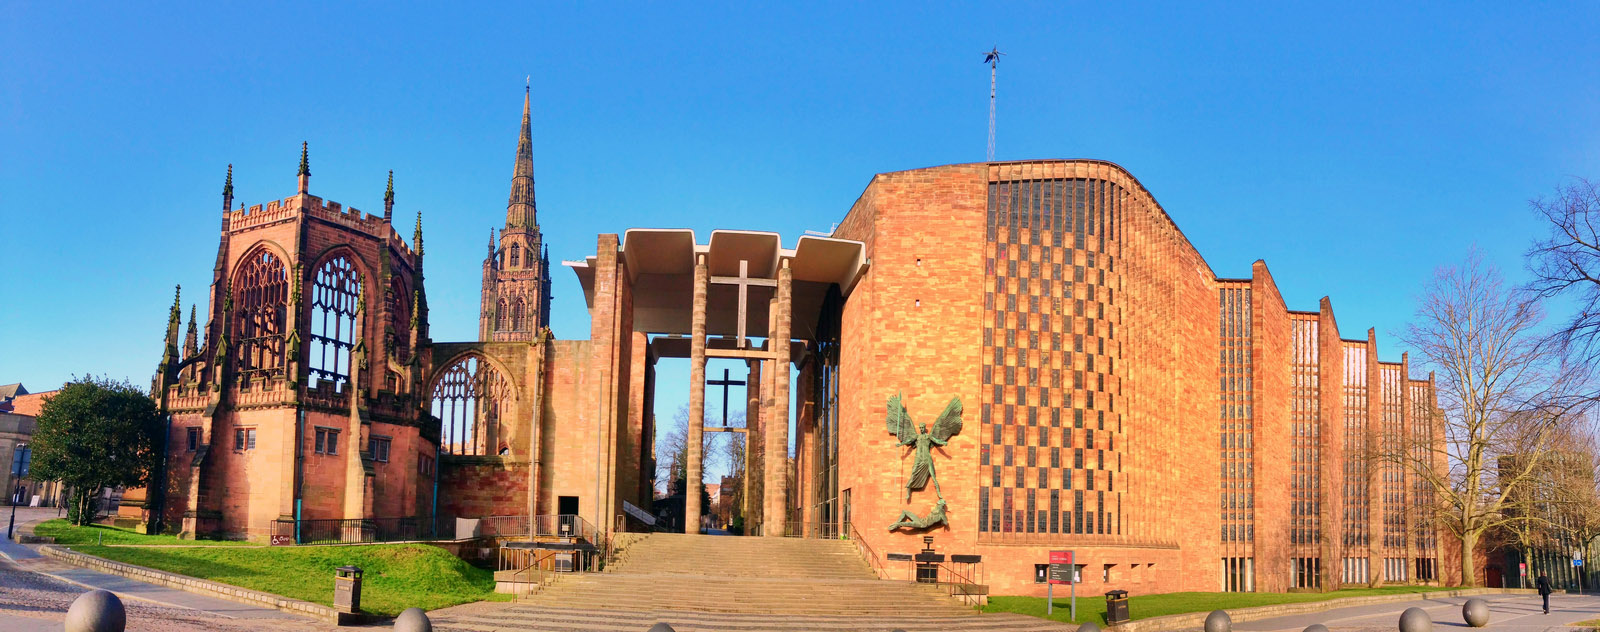 Catedral de Coventry - Megaconstrucciones, Extreme Engineering